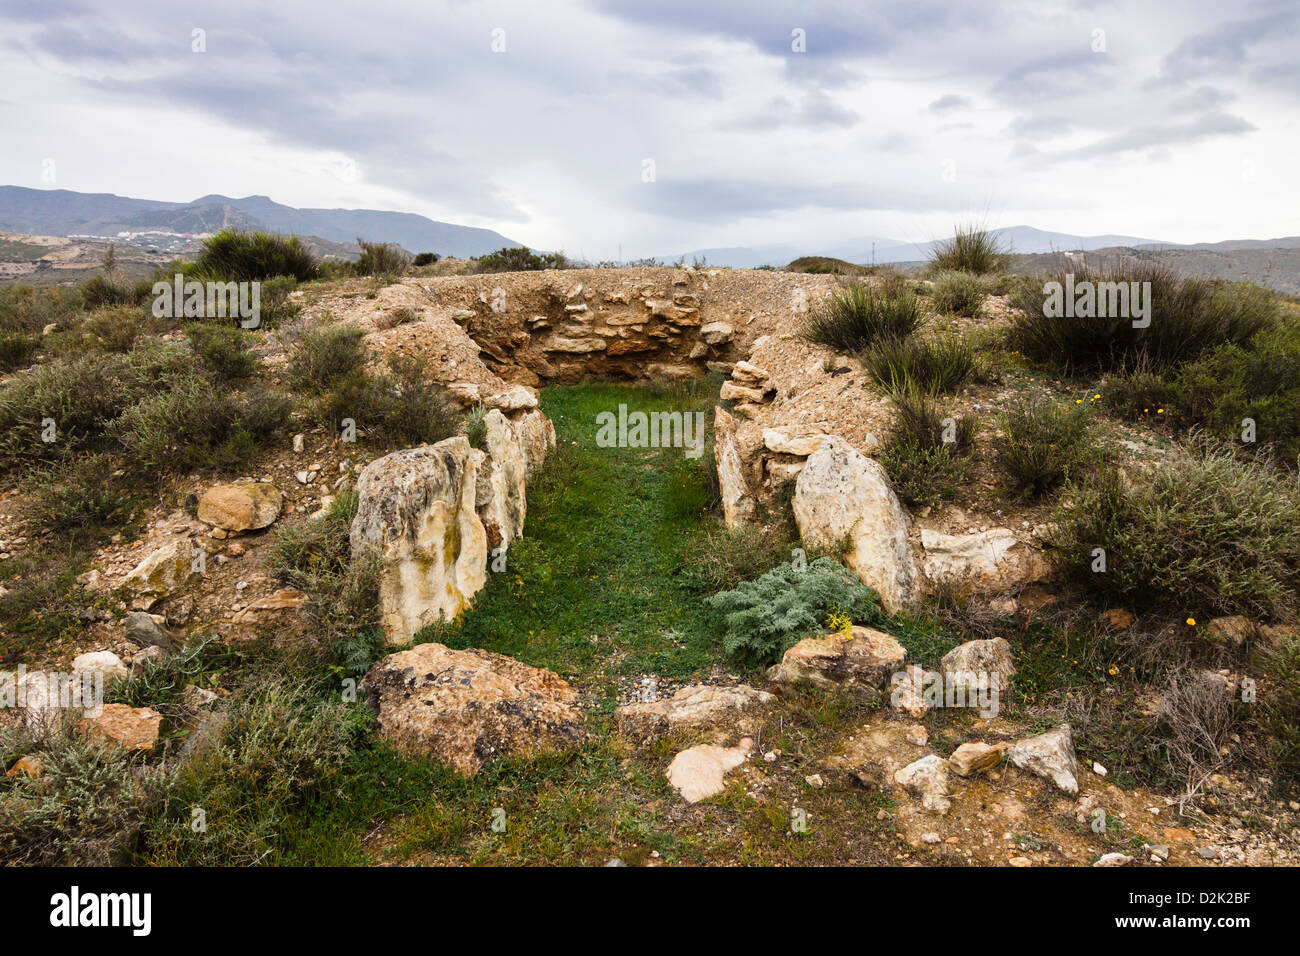 Restos de un tholos paso grave en Los Millares. Sitio arqueológico de la Edad del Cobre. Almería, España Foto de stock